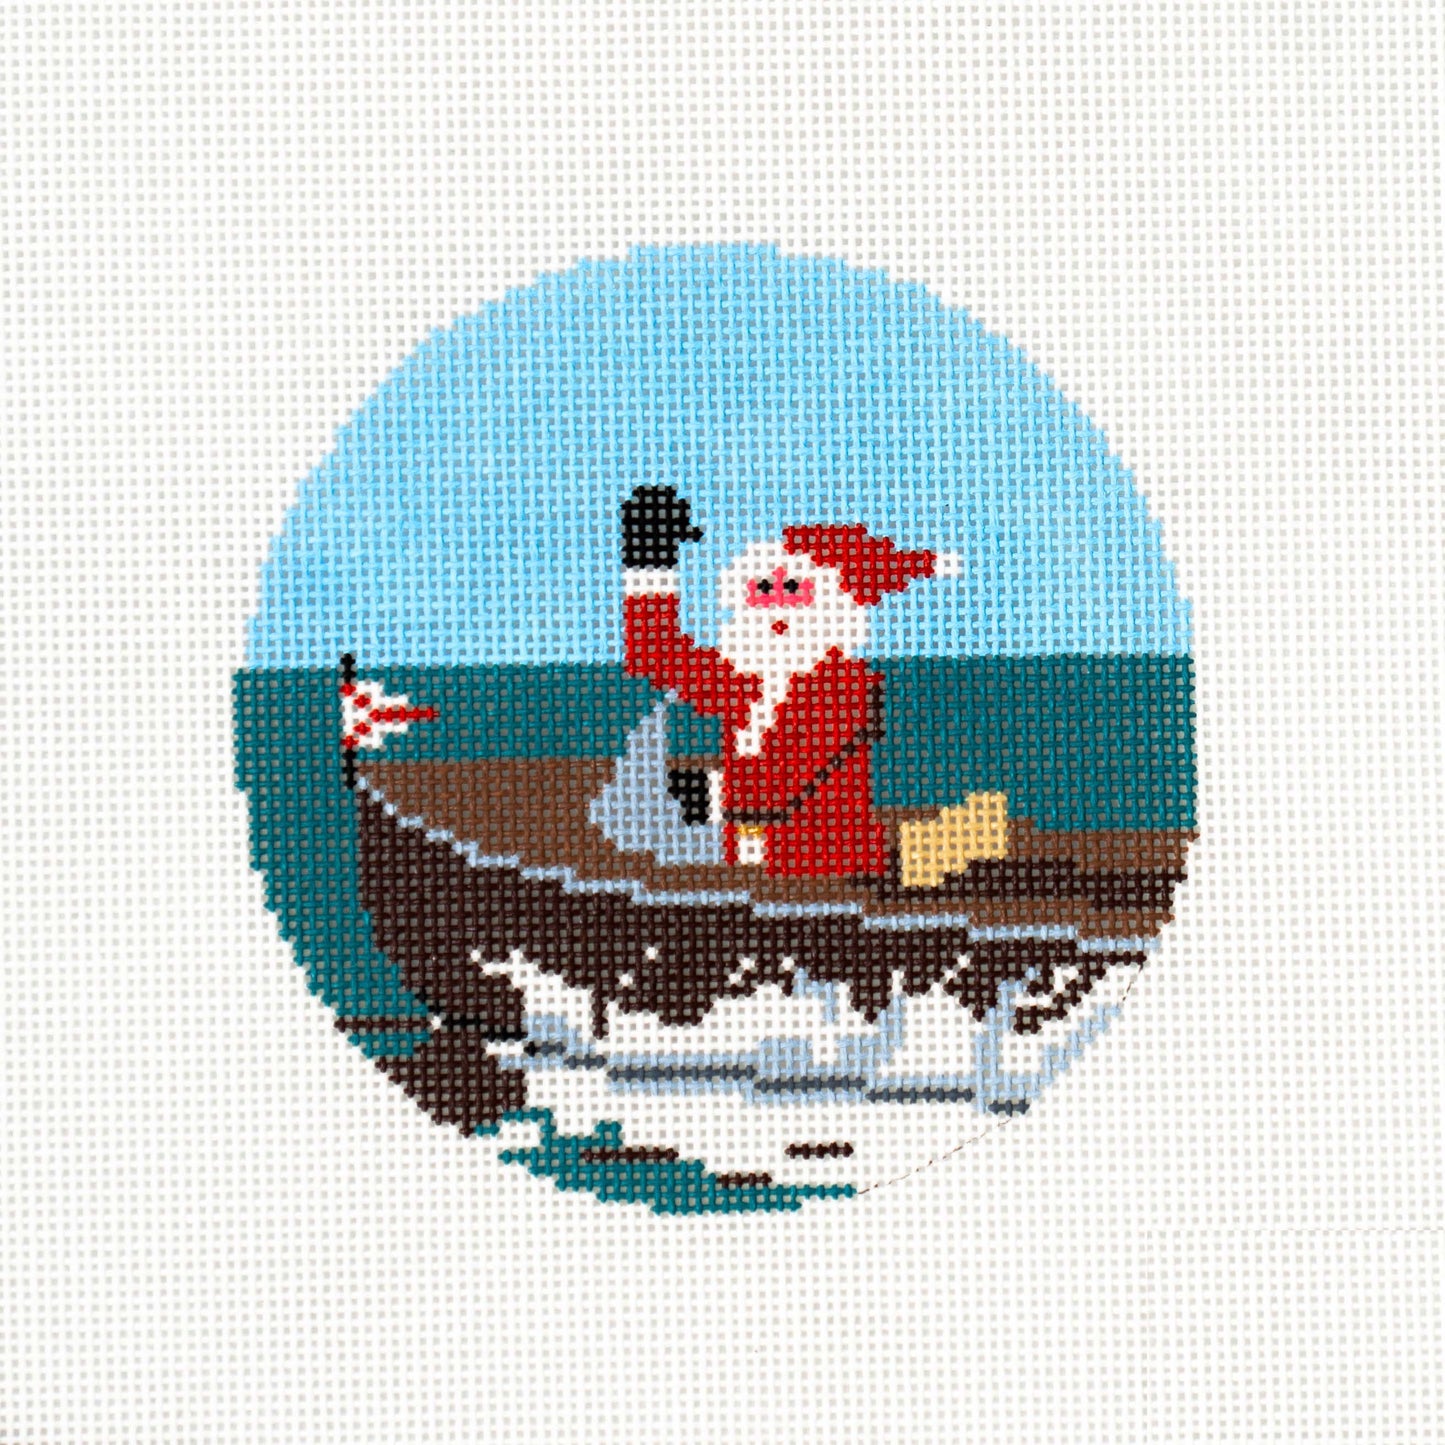 Sporty Santa Ornament - Boating Santa